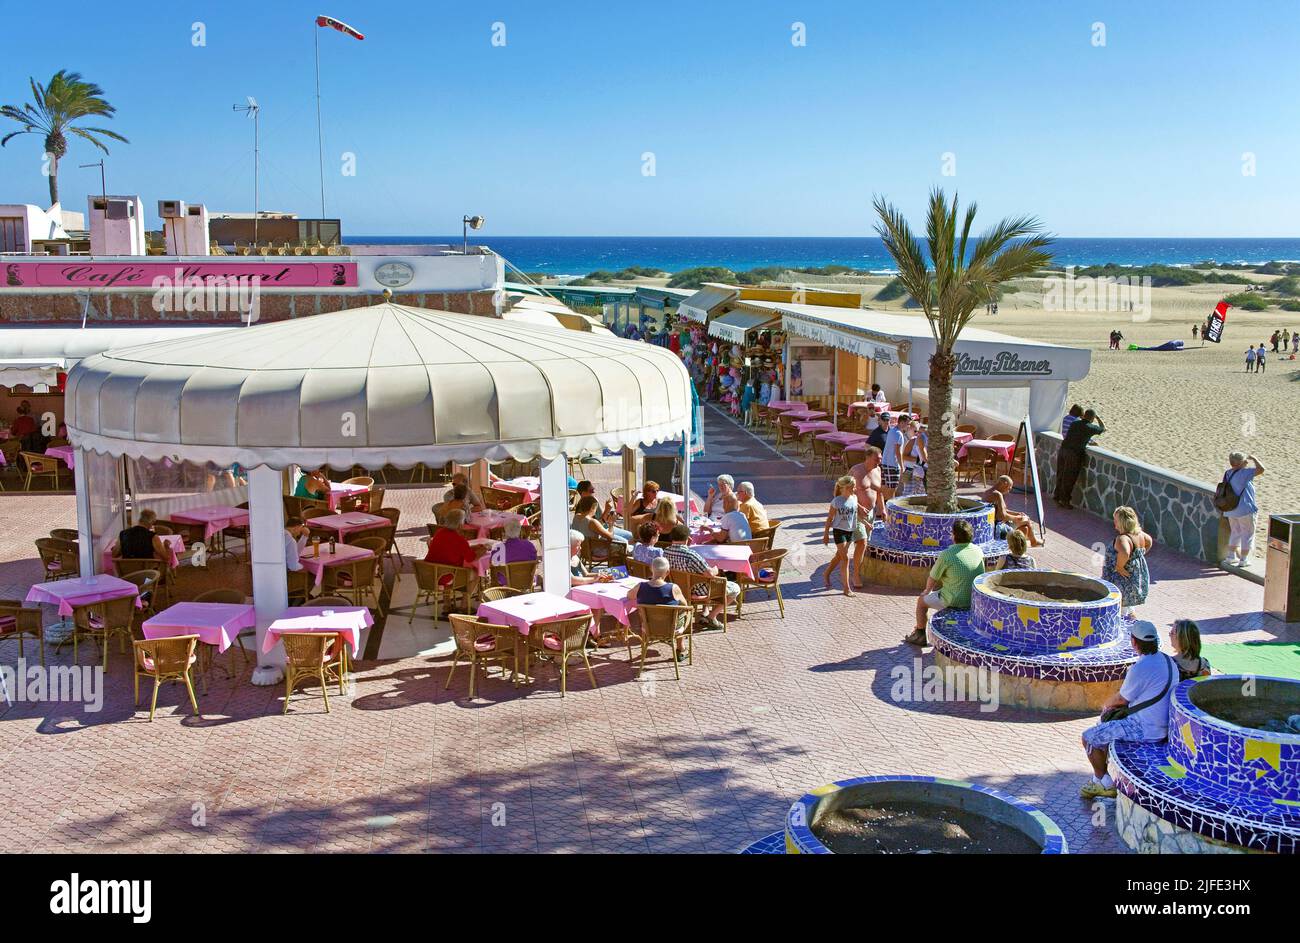 Geschäfte, Bars und Restaurants zwischen den Sanddünen, Strand von Playa del Ingles, Kanarische Inseln, Spanien, Europa Stockfoto